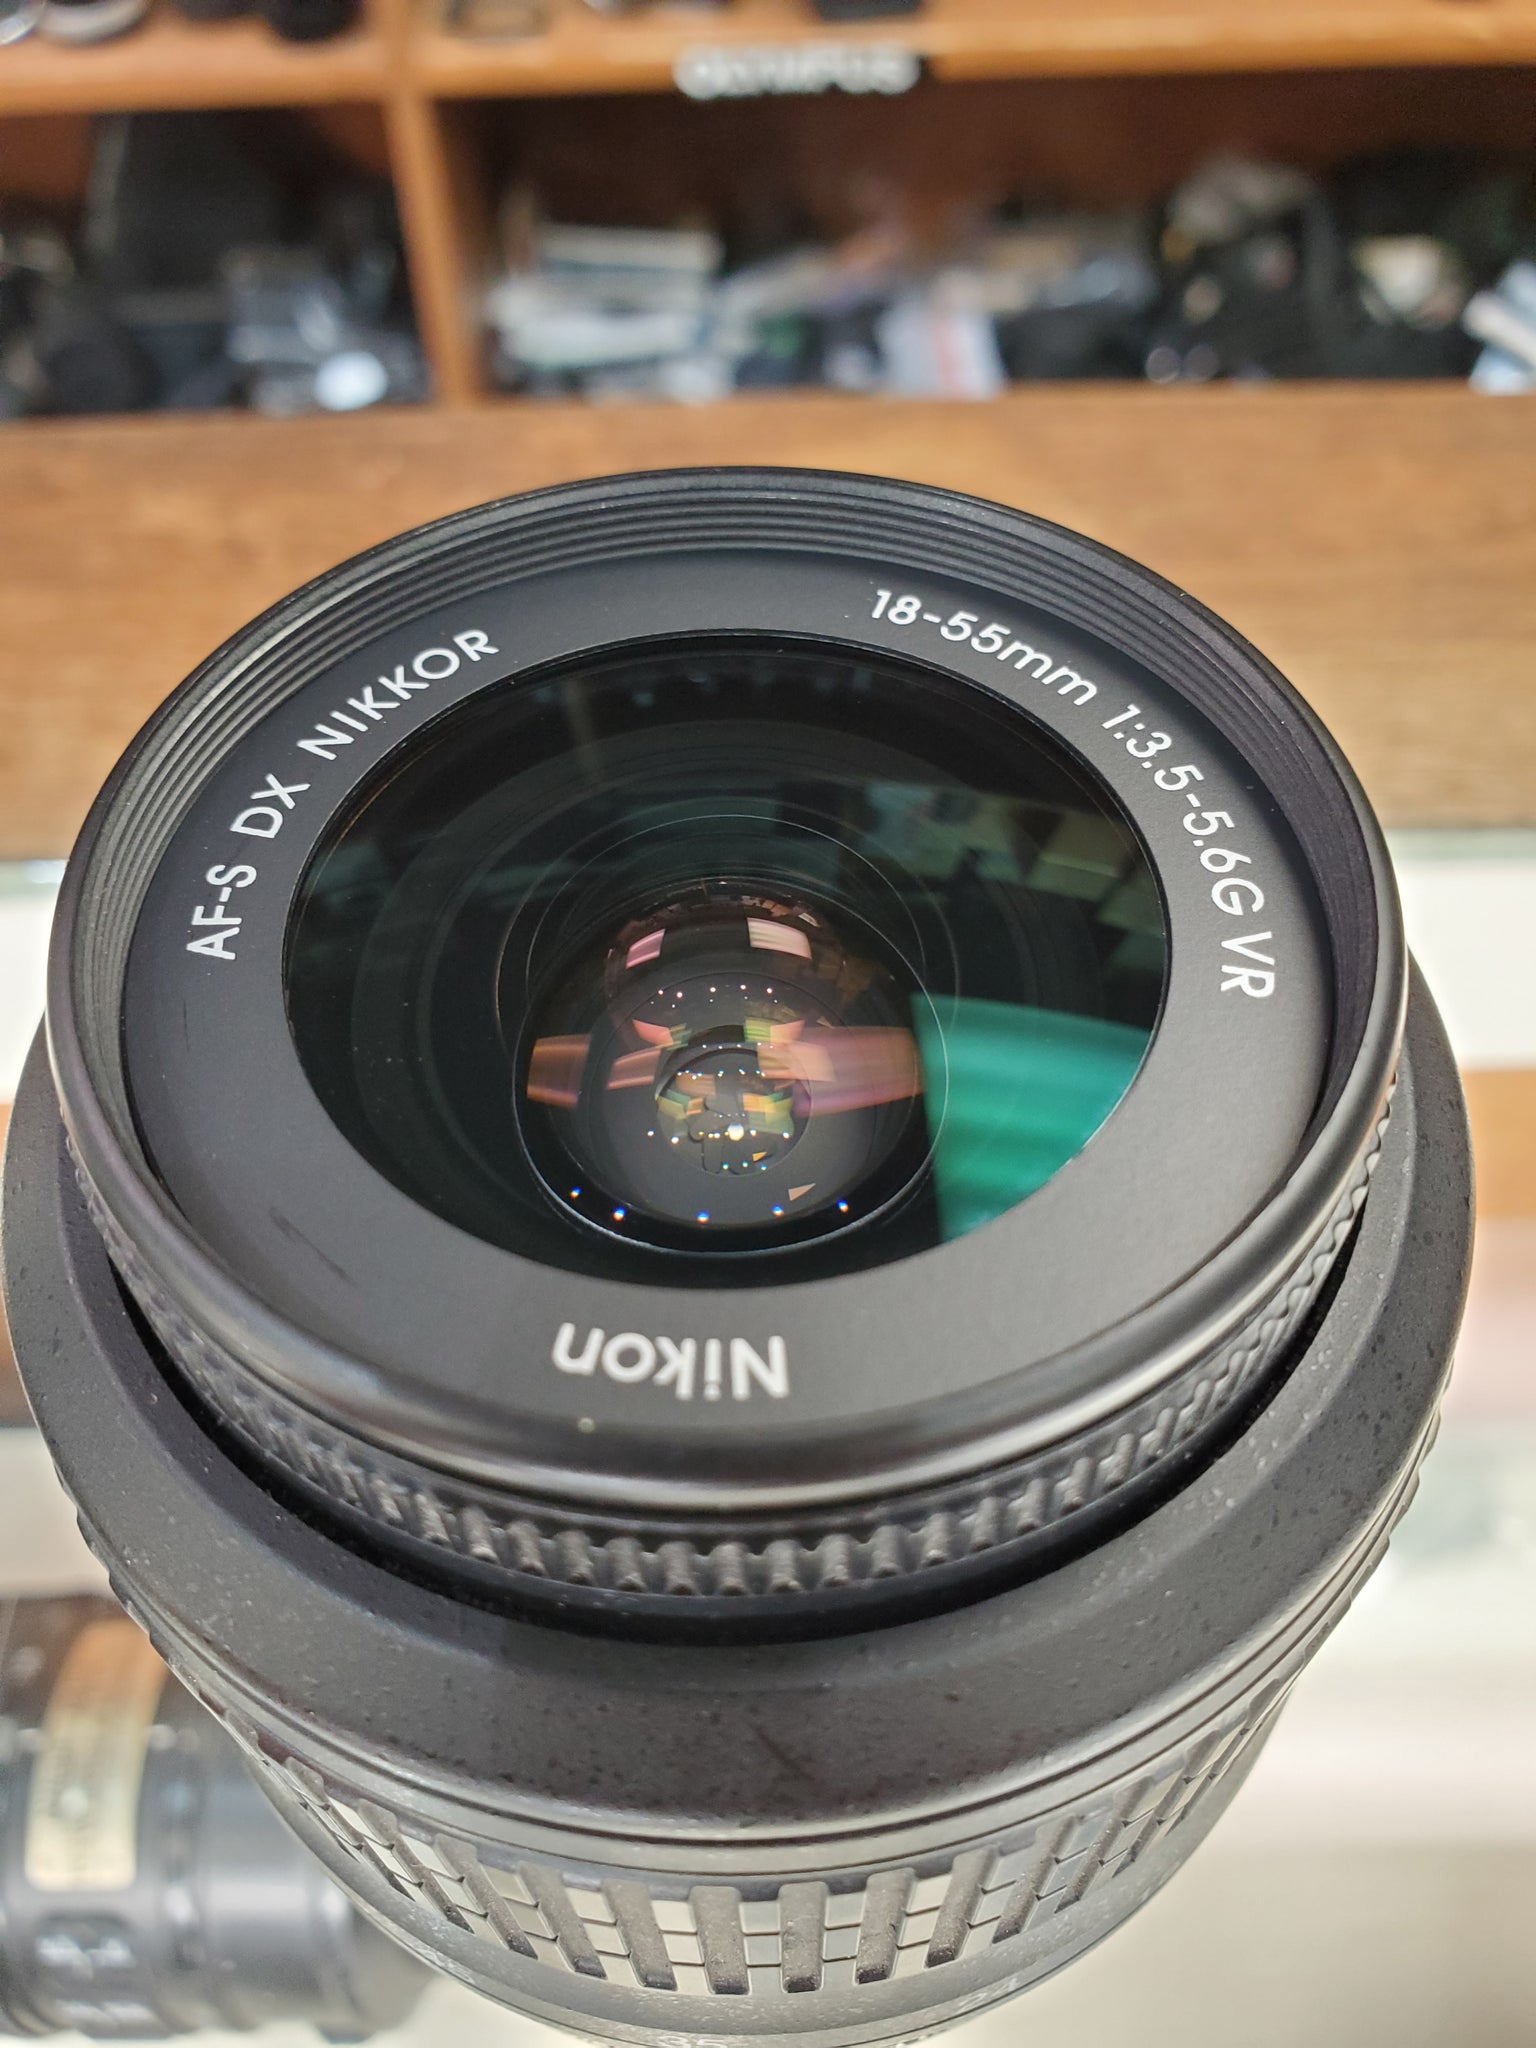 Nikon 18-55mm f/3.5-5.6G AF-S DX VR Nikkor Zoom Lens - Used